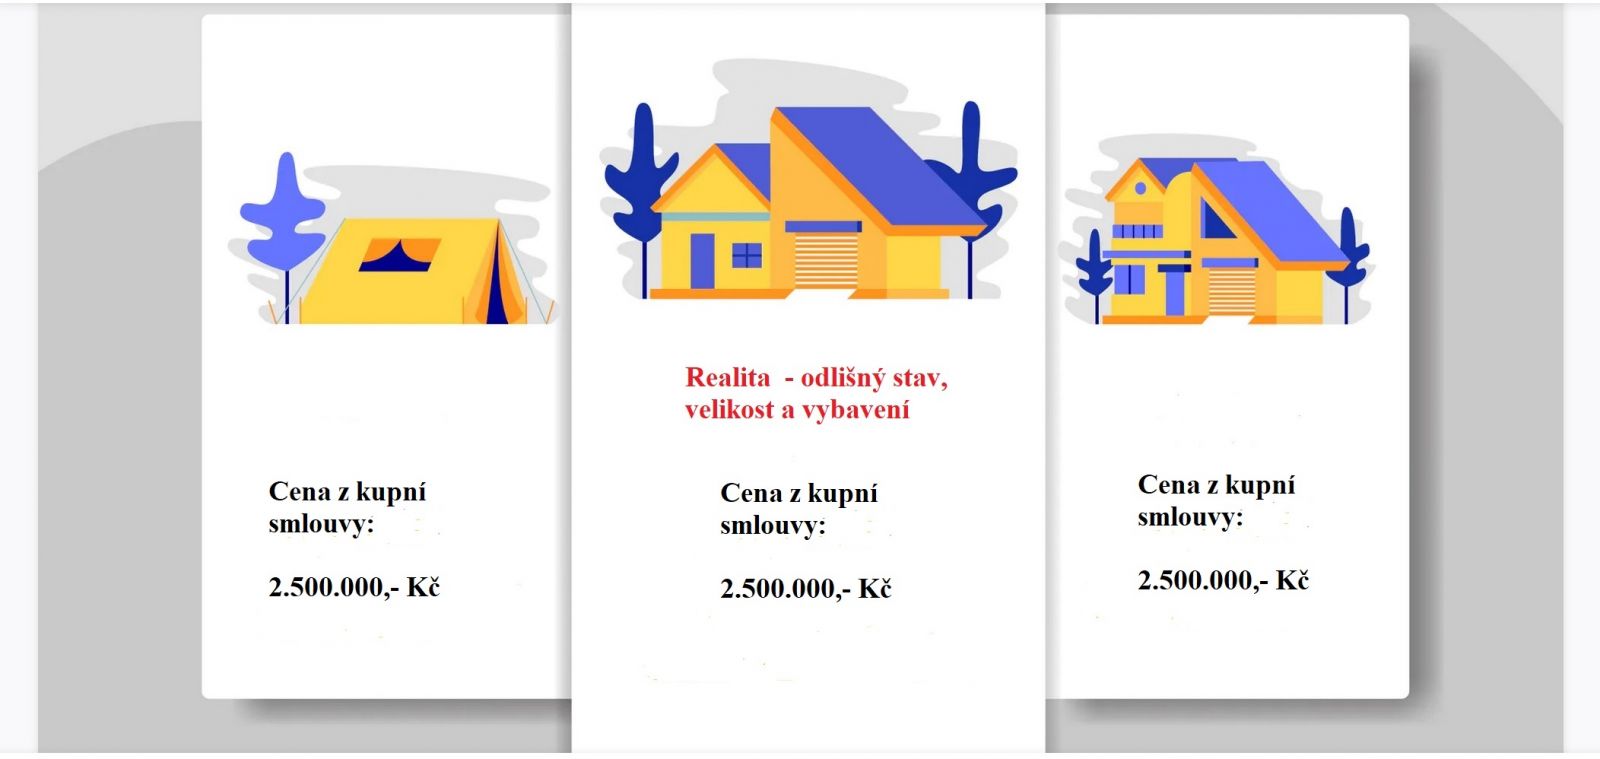 Ceny z kupních smluv bez dostatečných informací o charakteru nemovitosti mohou být zavádějící